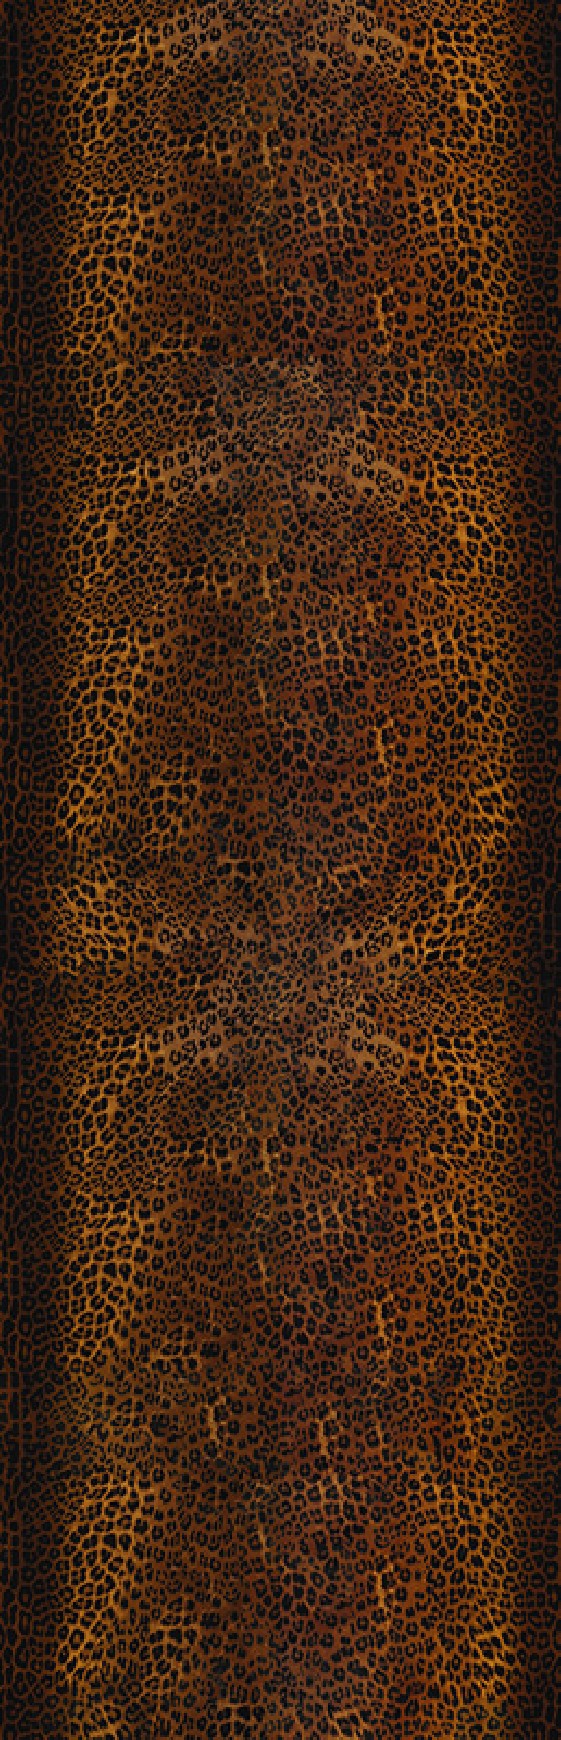 ANIMALIER DSQUARED2 papier peint léopard tapisserie LONDONART